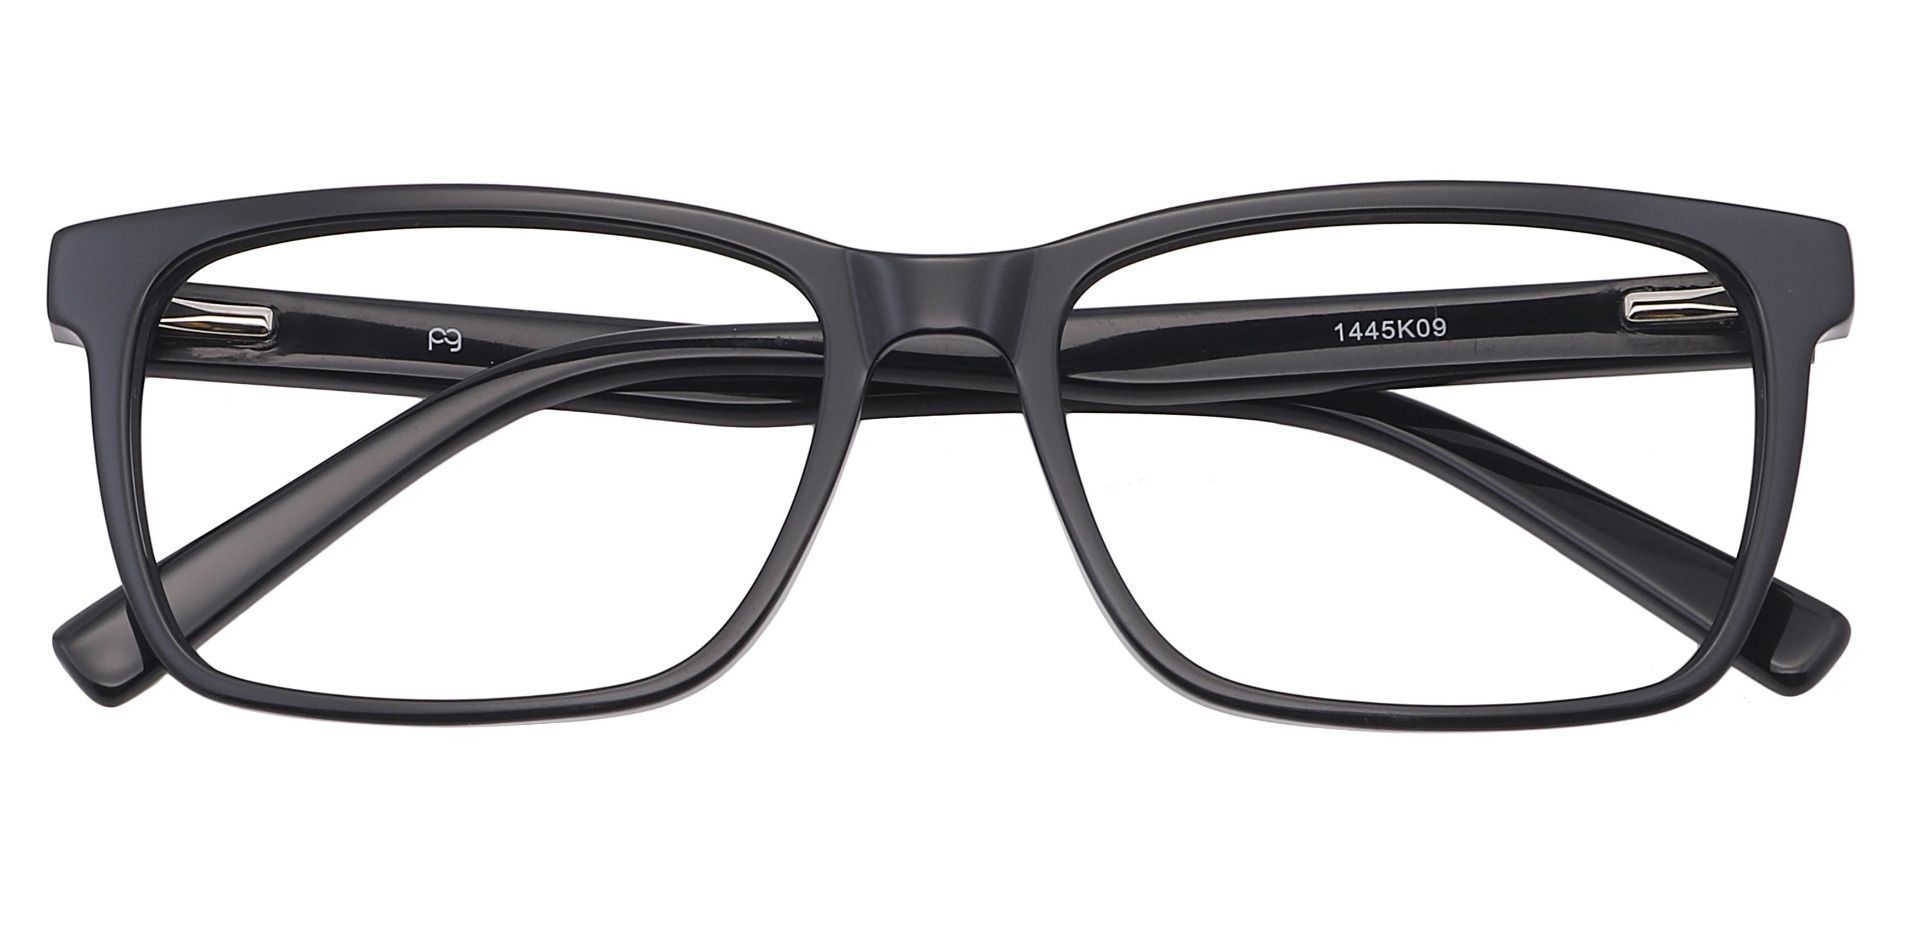 Galaxy Rectangle Progressive Glasses - Black